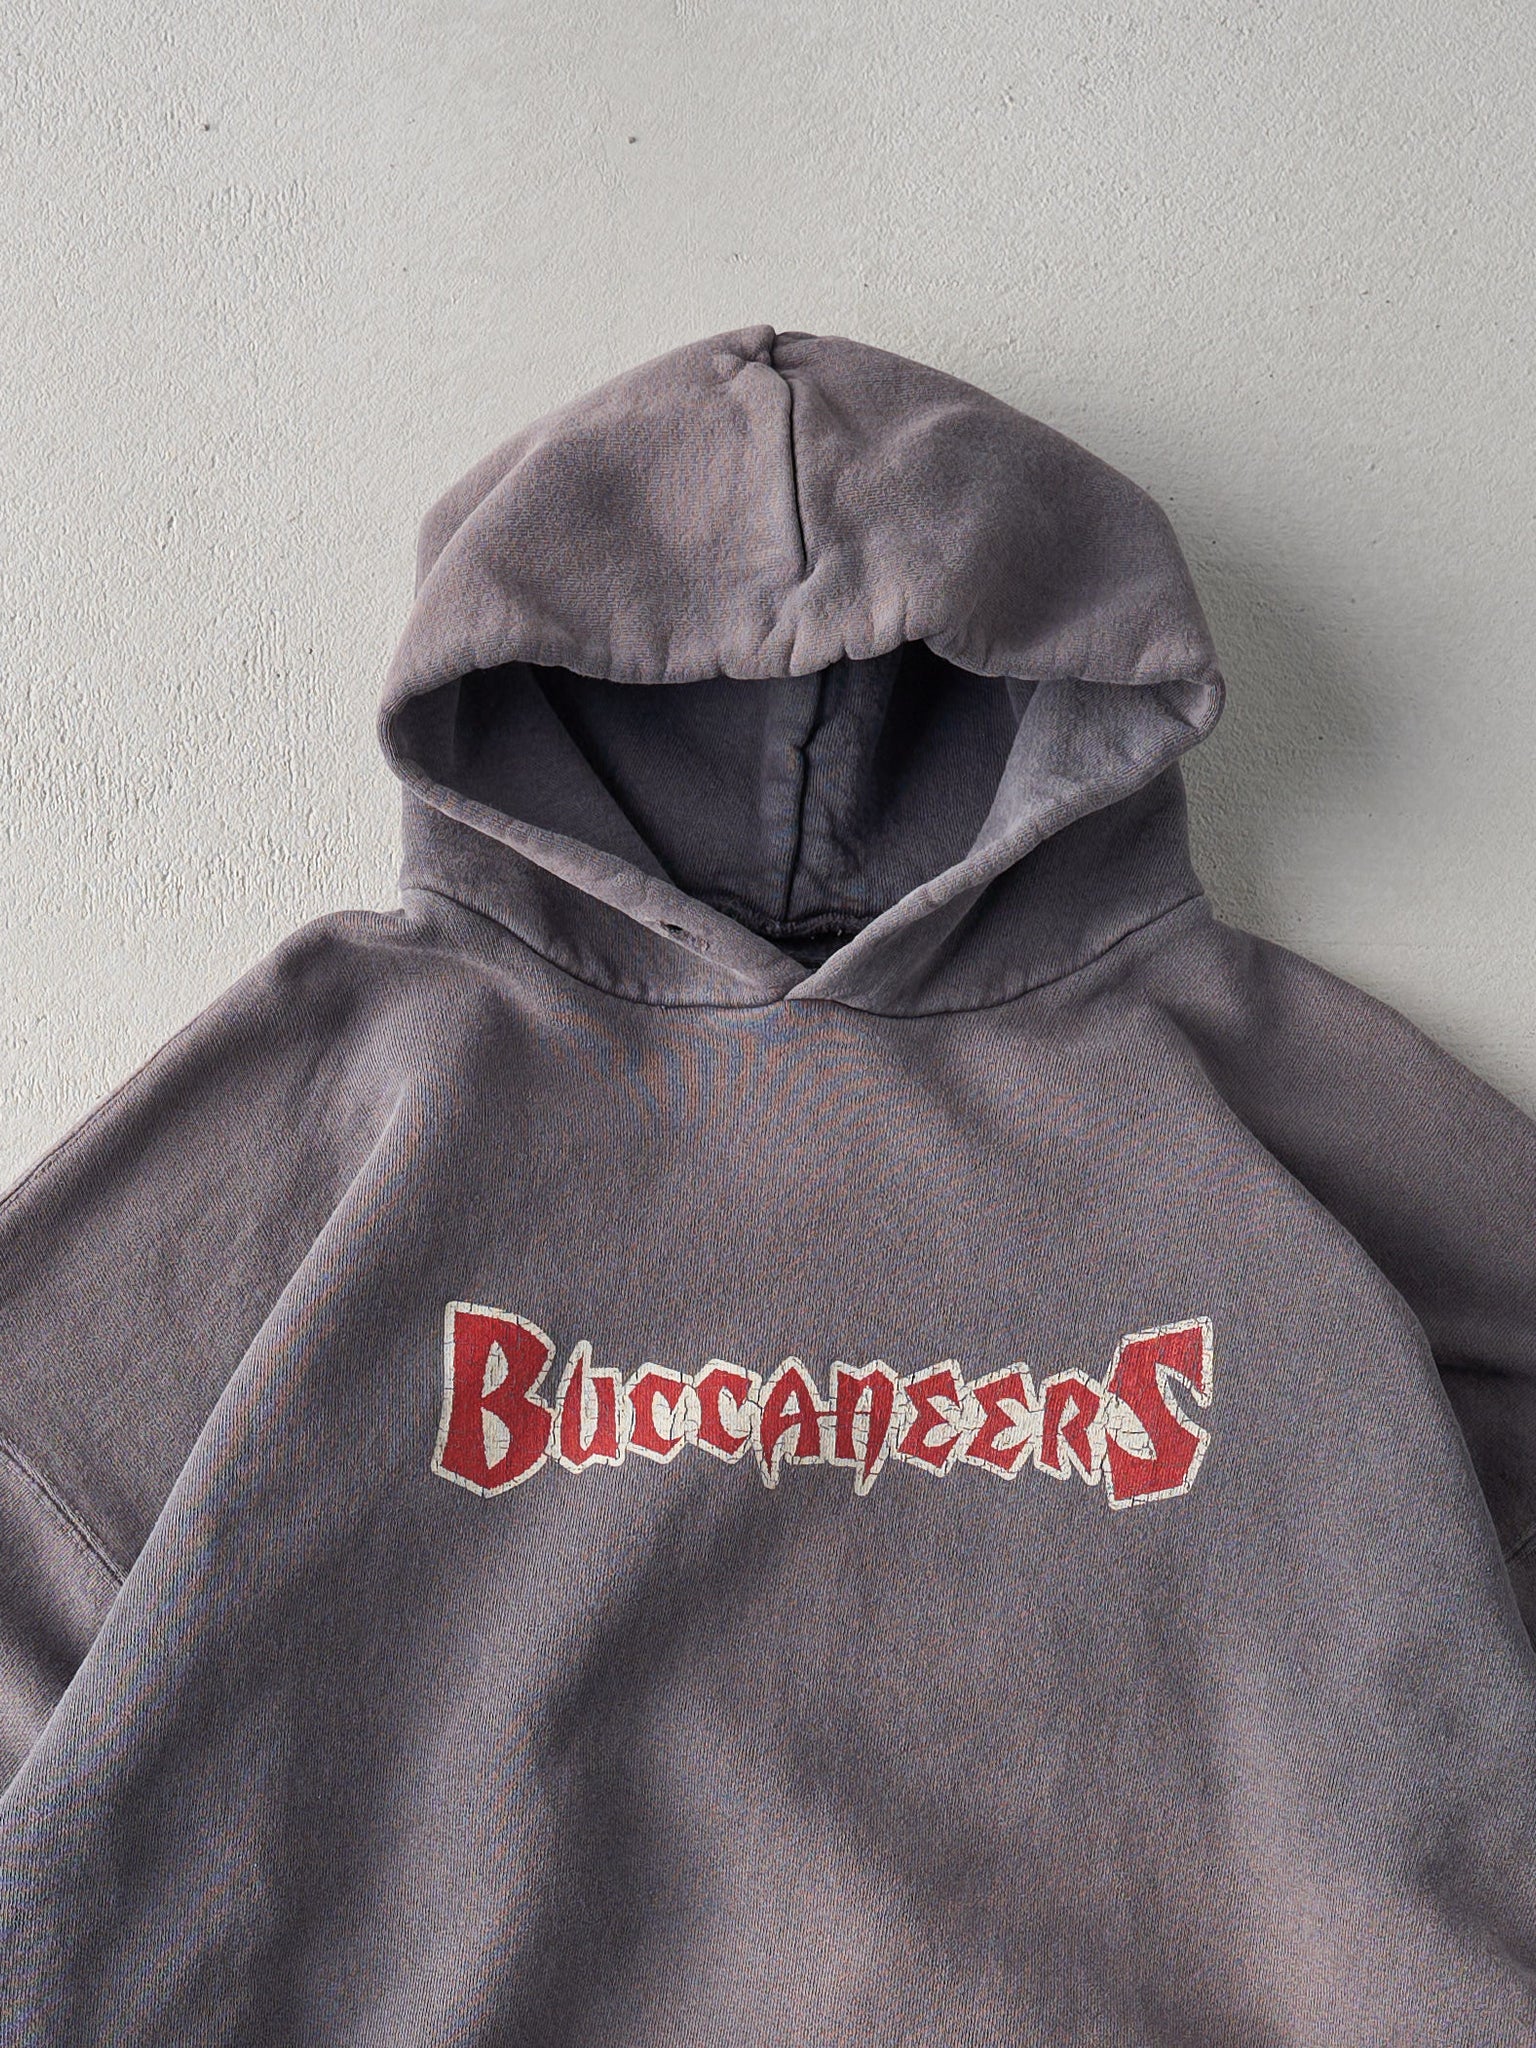 Vintage 90s Washed Grey Tampa Bay Buccaneers NFL Hoodie (L)